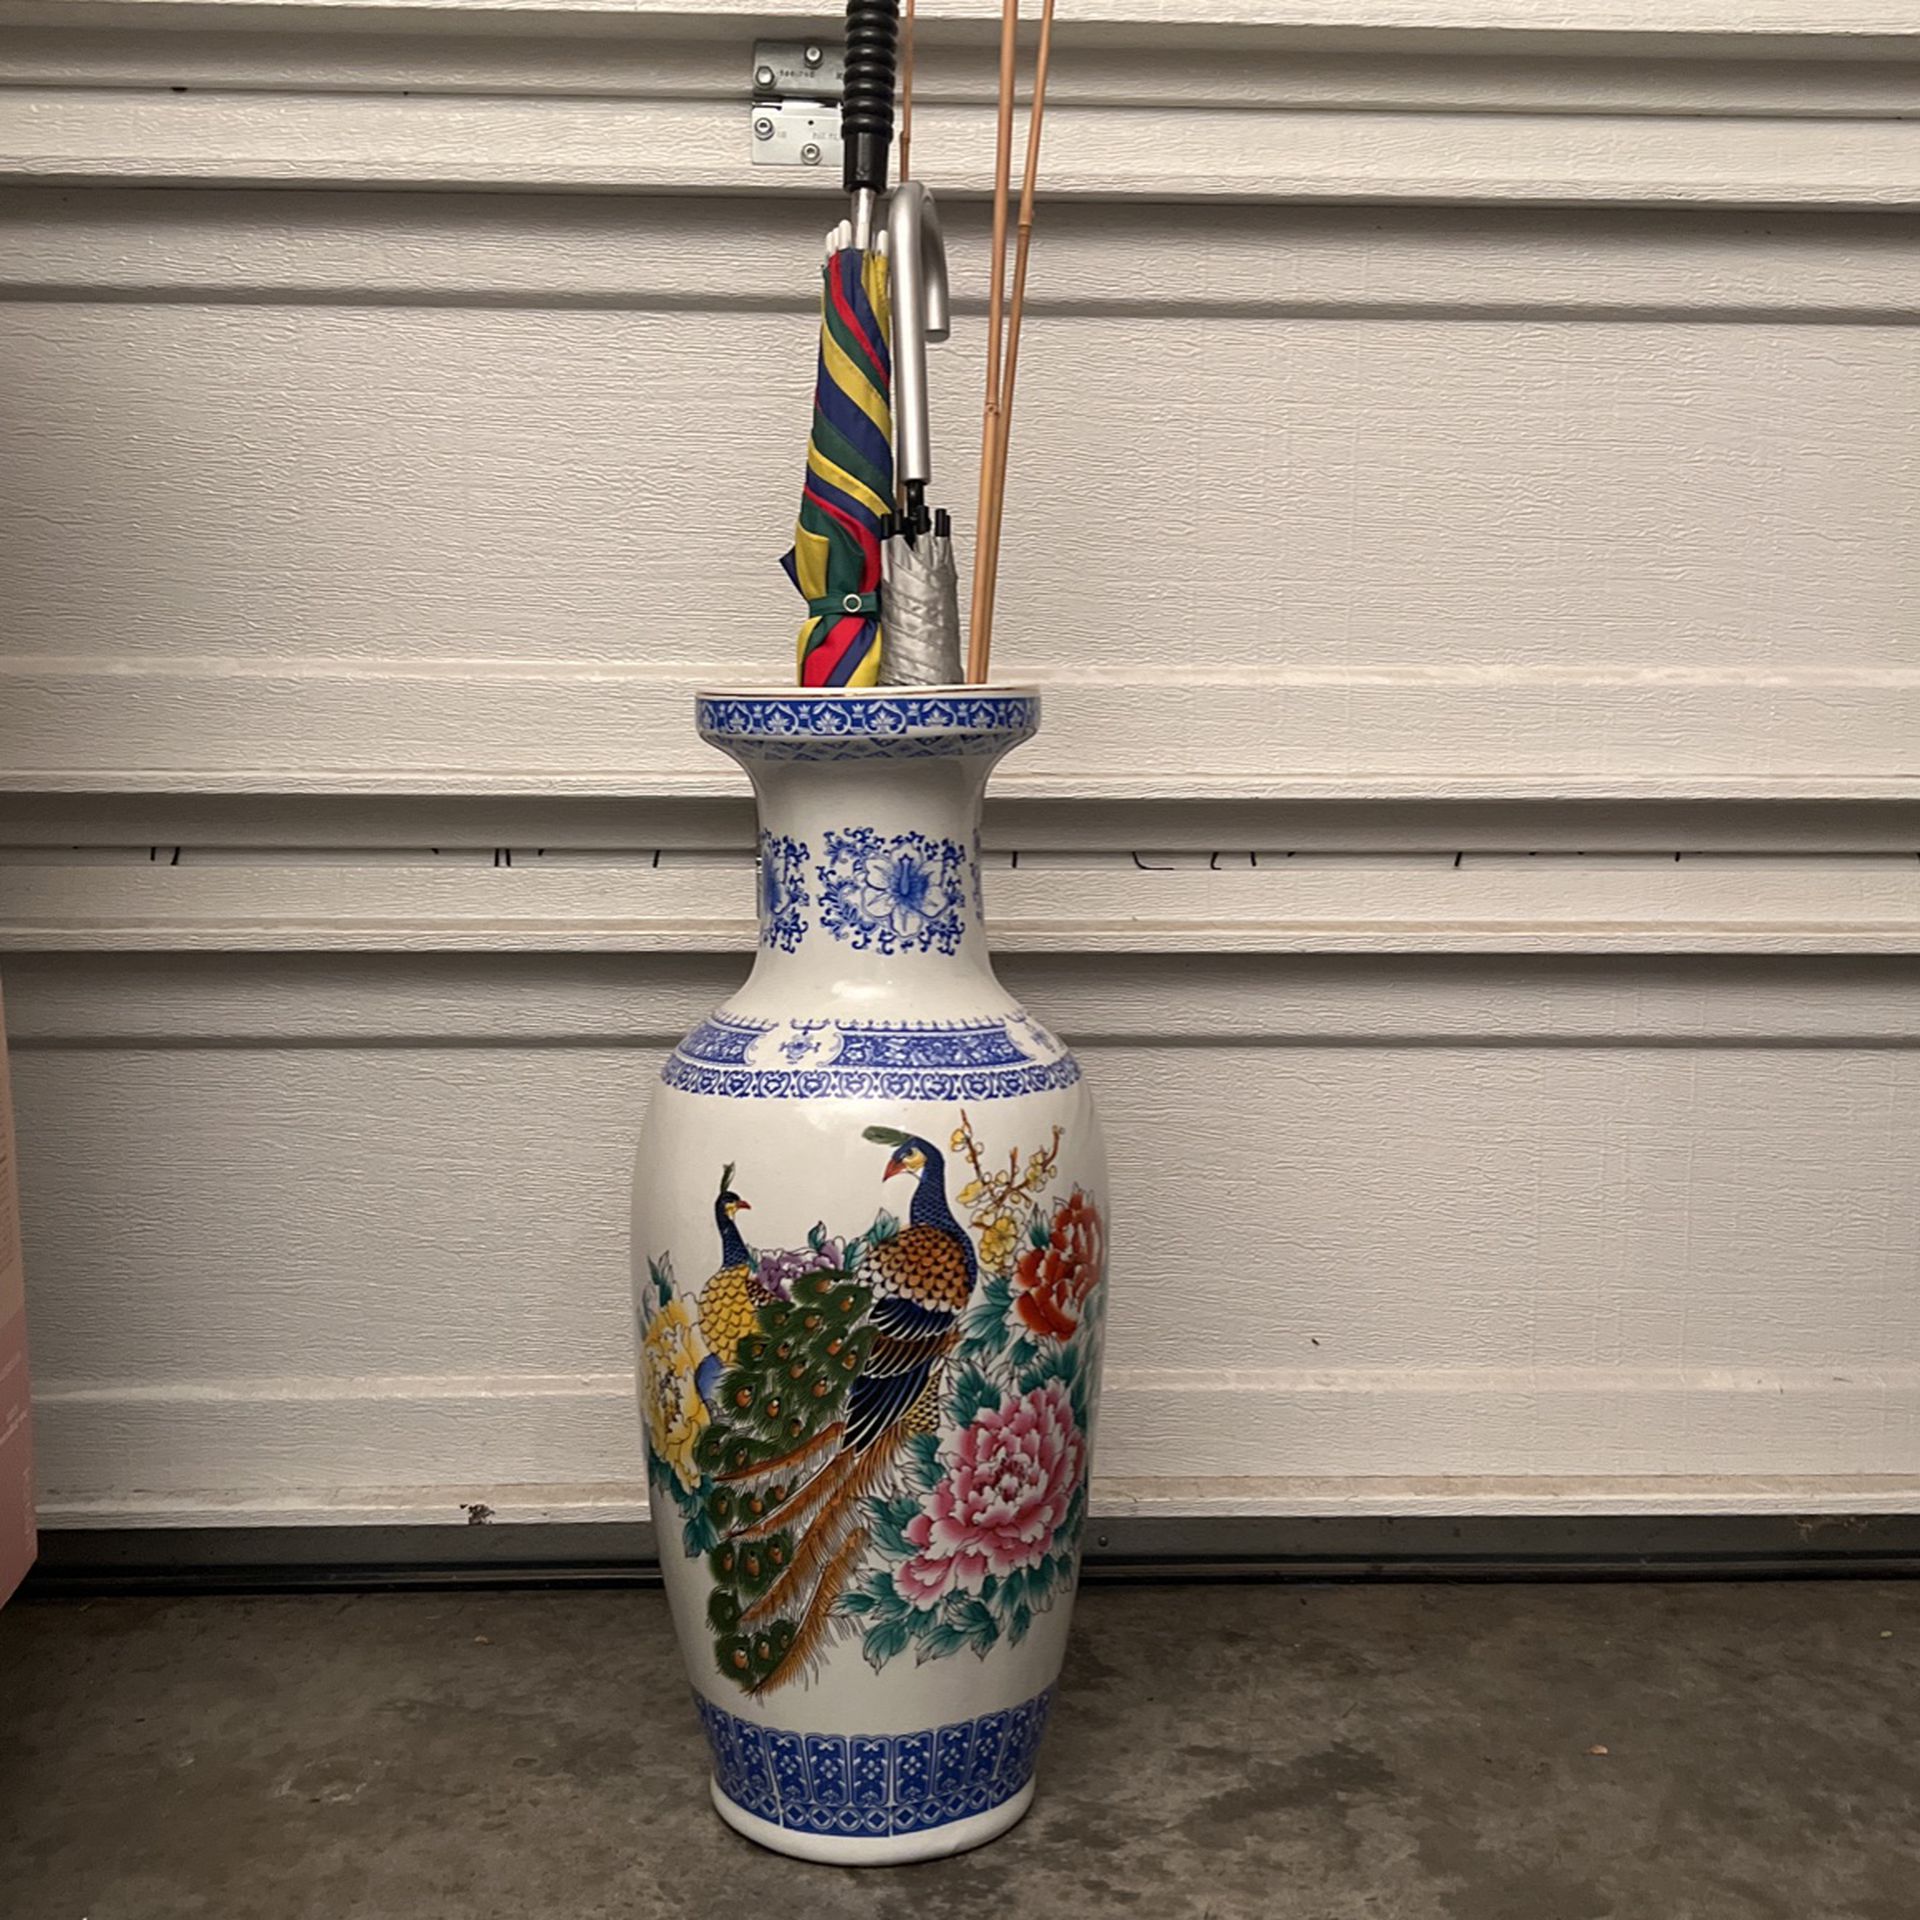 Umbrella Holder Or Decorated Vase